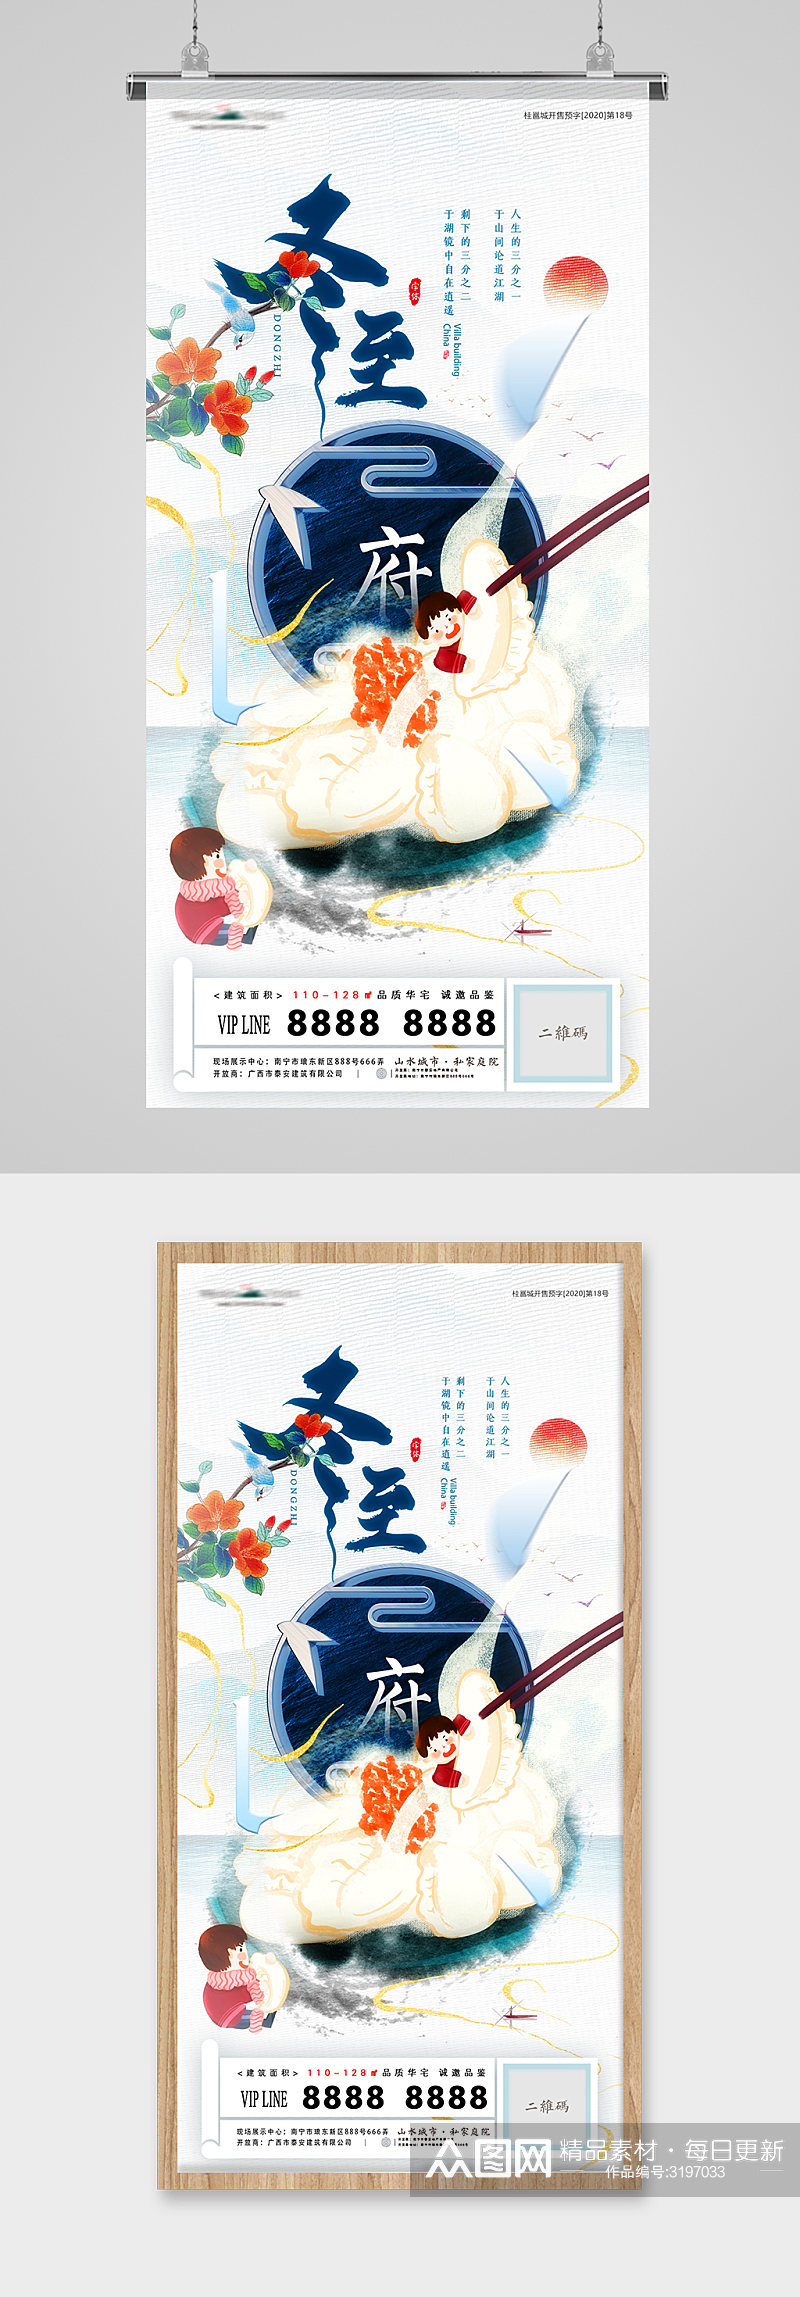 冬至节气饺子美食中式地产海报素材